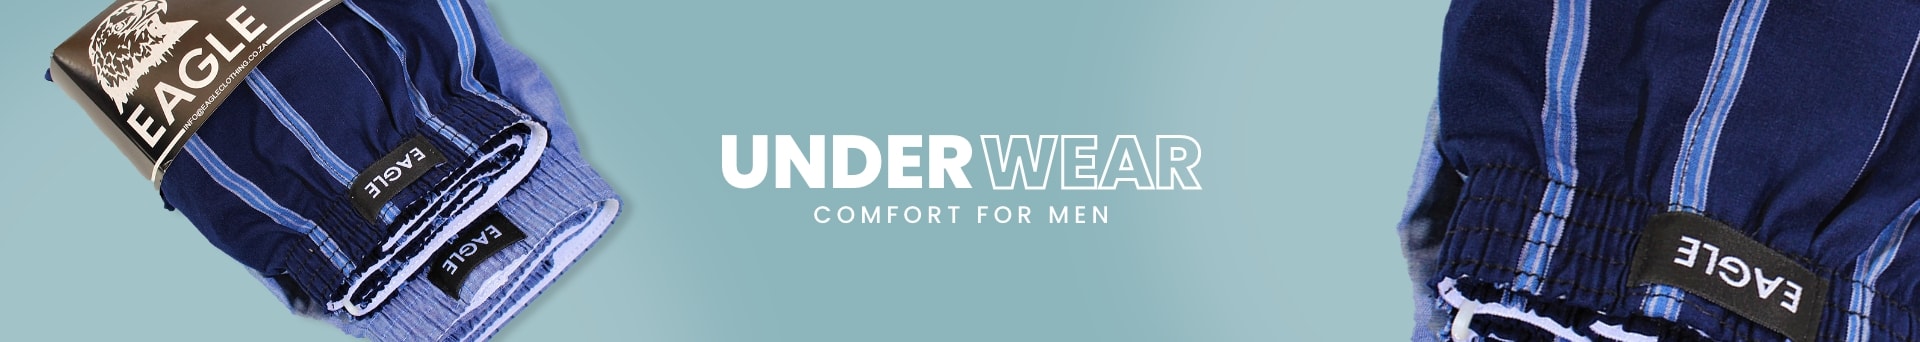 Mens Underwear Collection Banner - Desktop